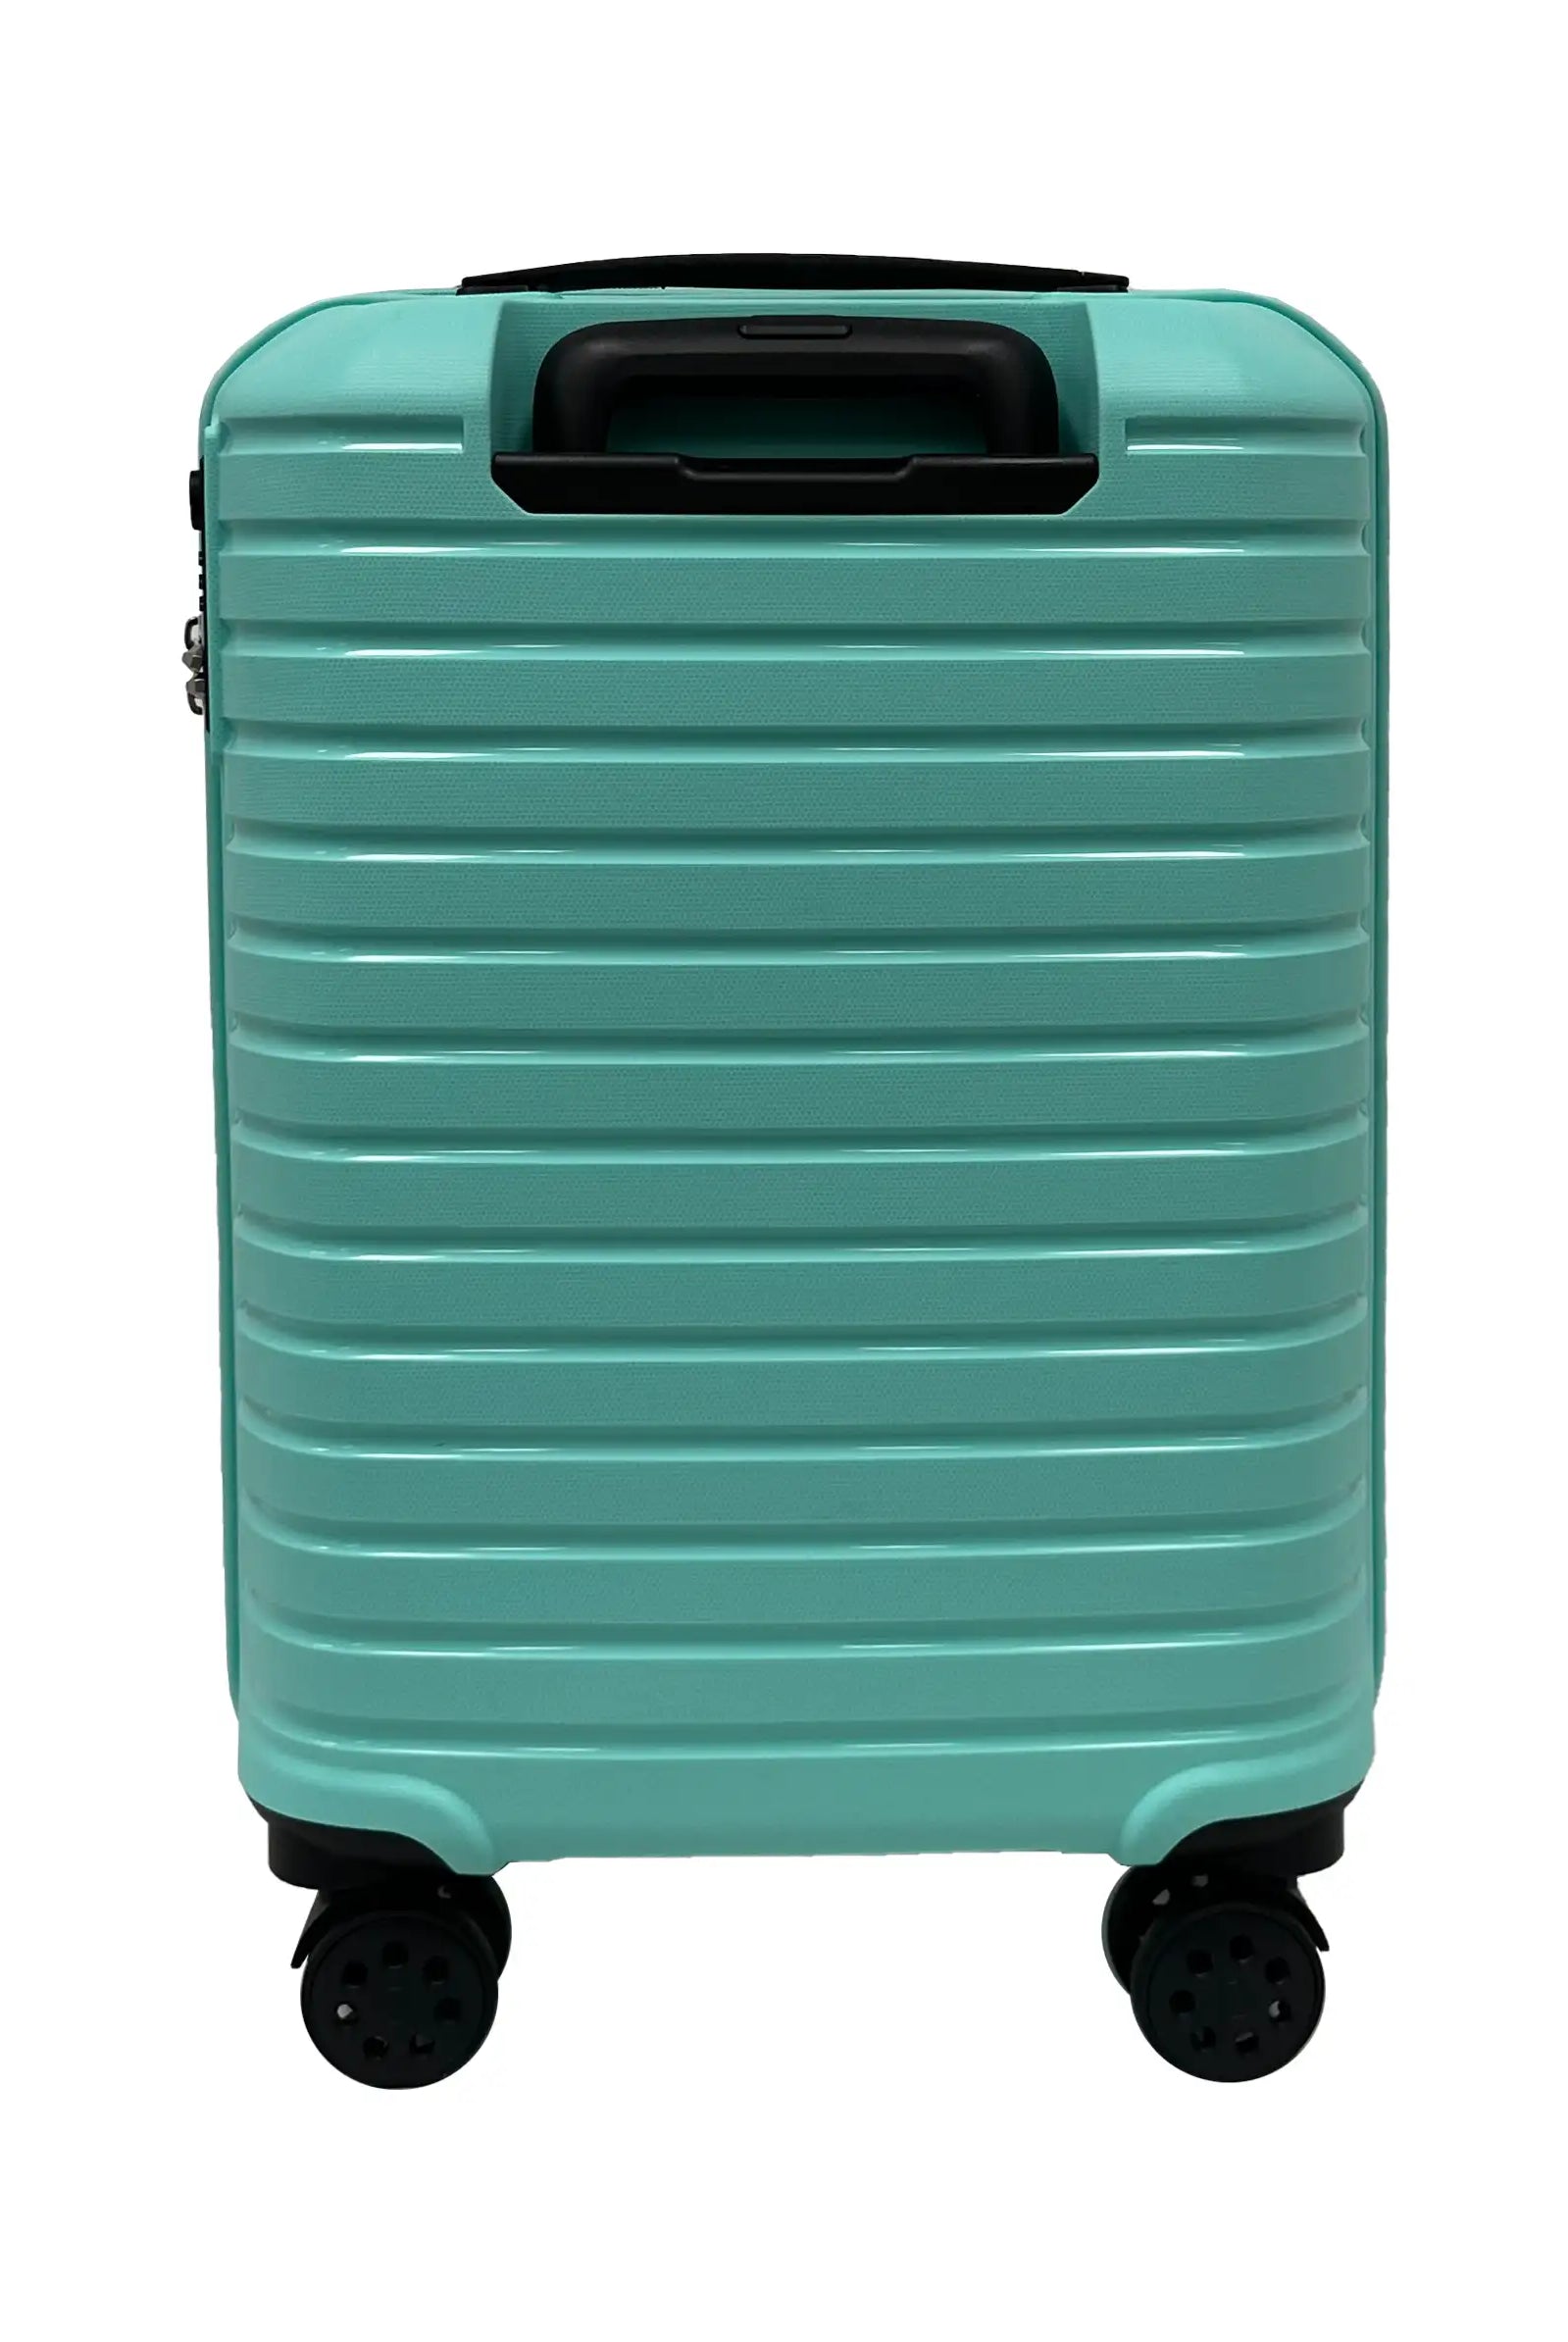 sage green suitcase